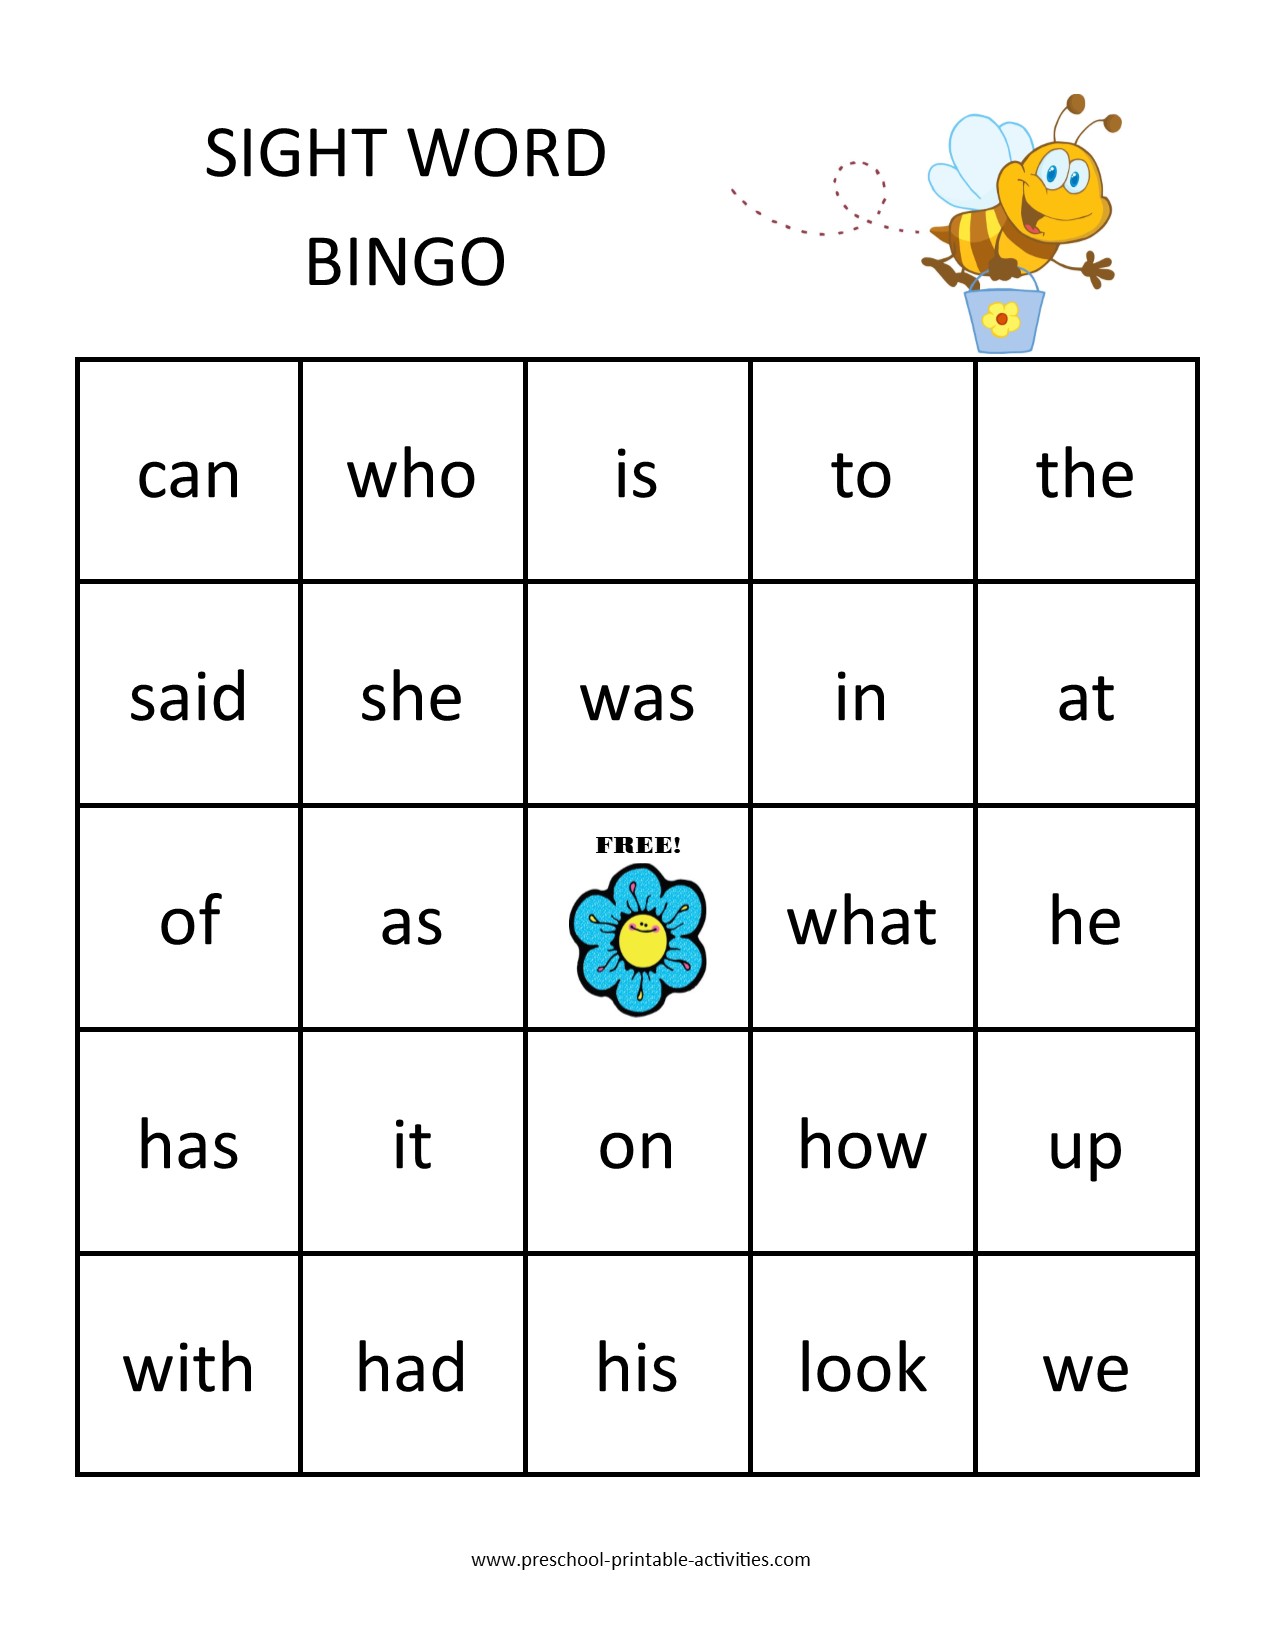 printable sight word bingo game board